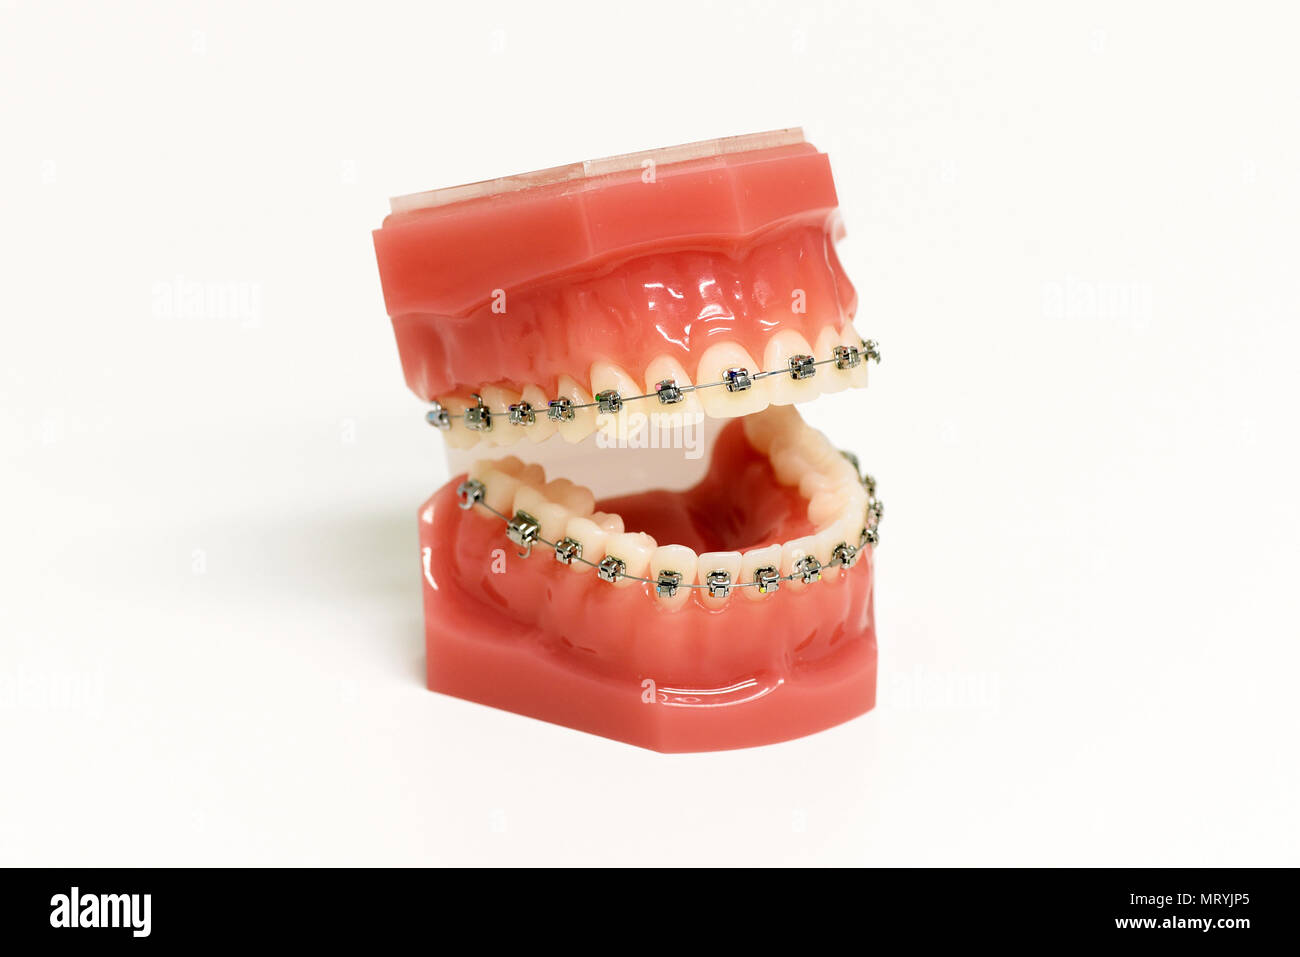 Modèle dentaire appareil orthodontique montrant avec accolades métalliques attachés à la dents supérieures et inférieures pour corriger la morsure en redressant et en alignant le t Banque D'Images